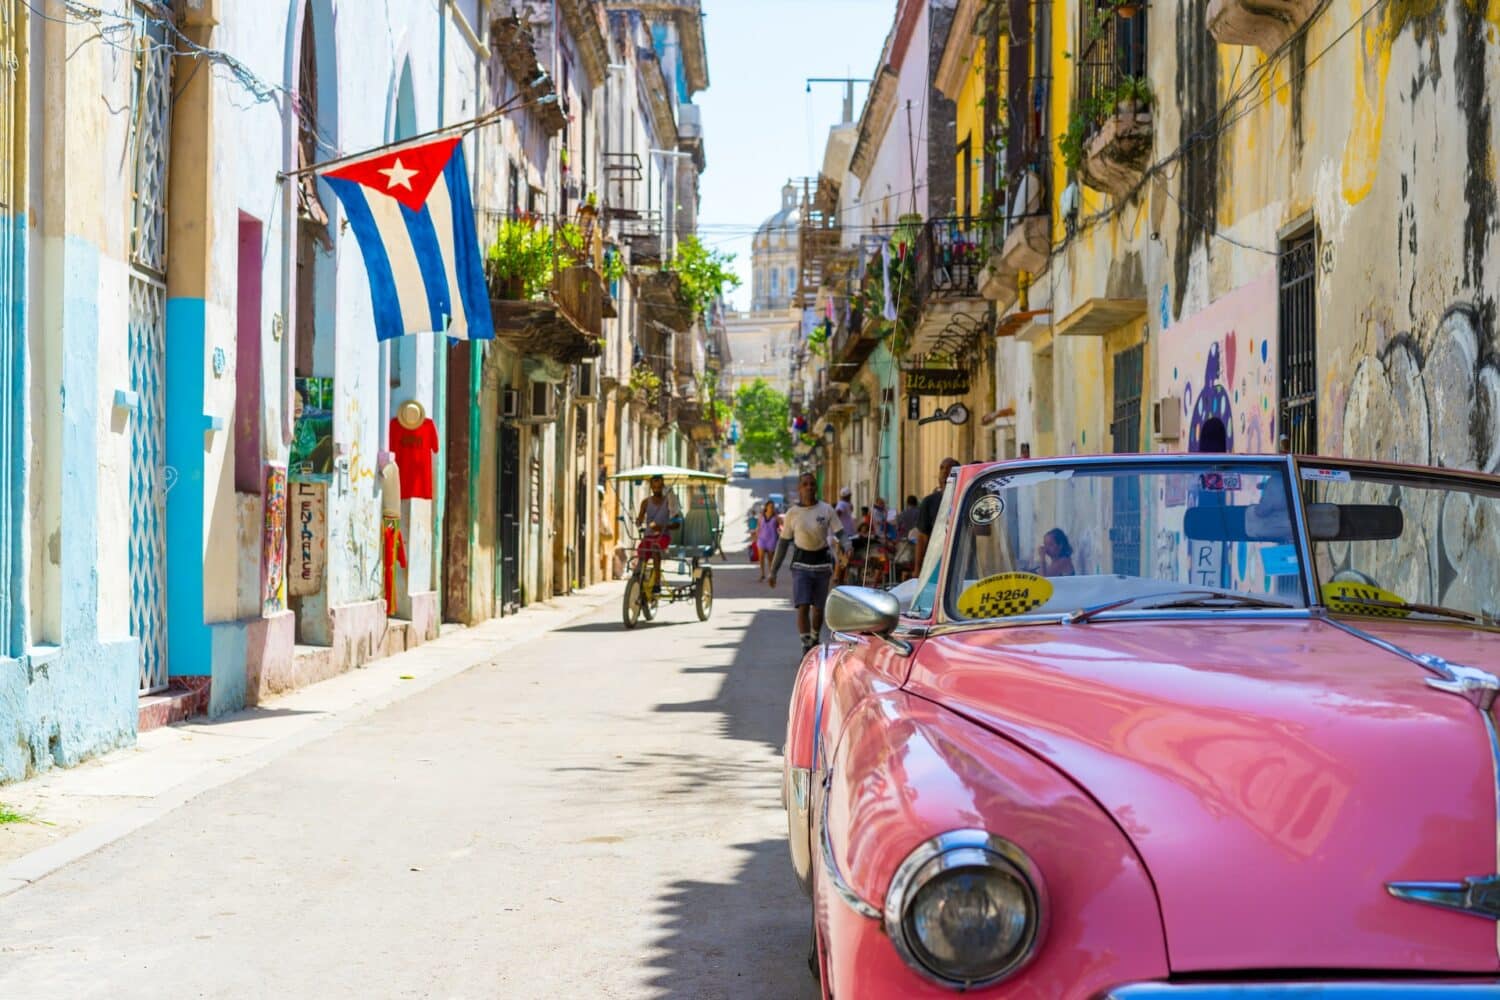 Rua em Havana para ilustra o post sobre seguro viagem Cuba. No canto direito fica um conversível vermelho, e ao fundo várias casinhas coloridas ladeiam a rua asfaltada. Algumas pessoas caminham por ali, e um homem anda de charrete no meio do local. No canto esquerdo mais ao fundo está uma bandeira de Cuba. - Foto: Alexander Kunze via Unsplash